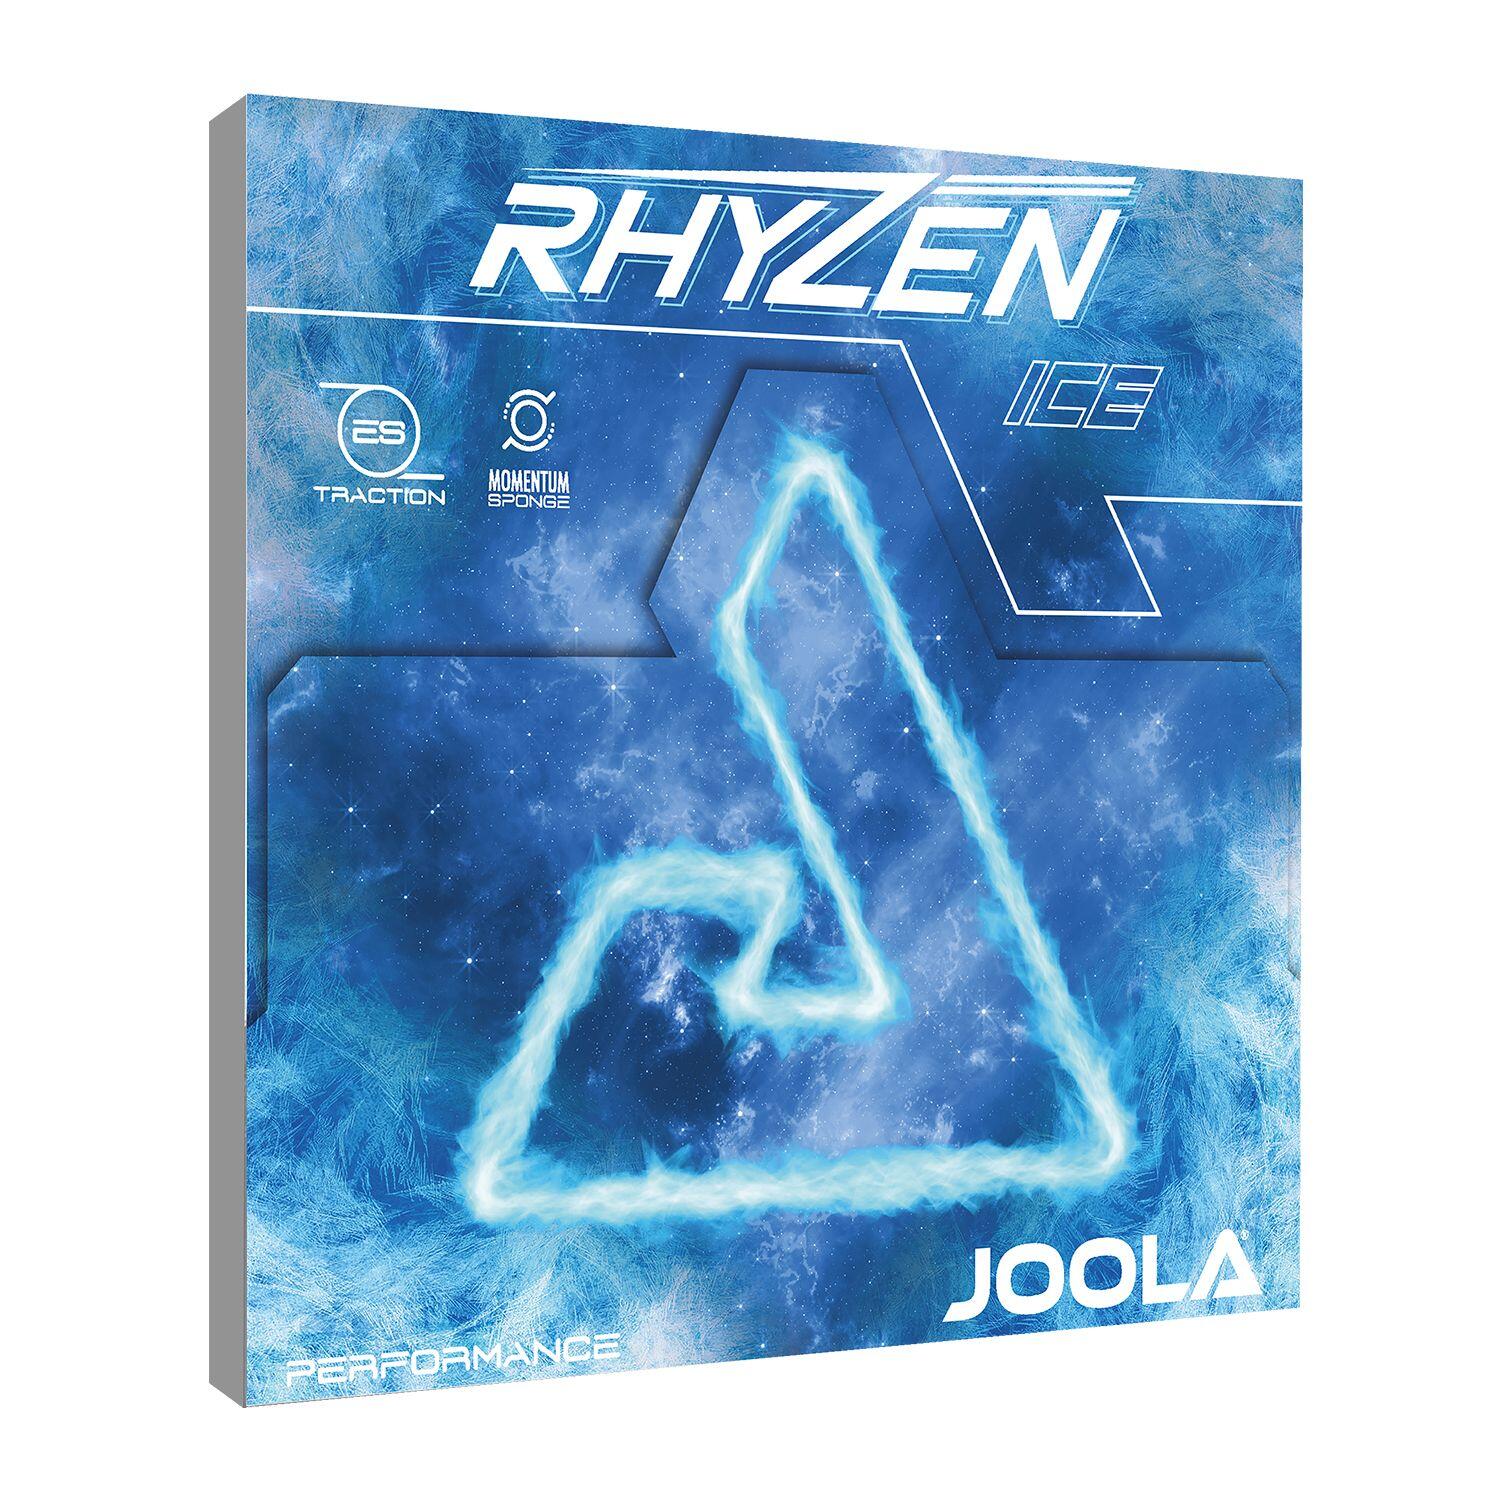 Joola Rhyzen Ice Table Tennis Rubber 2/2